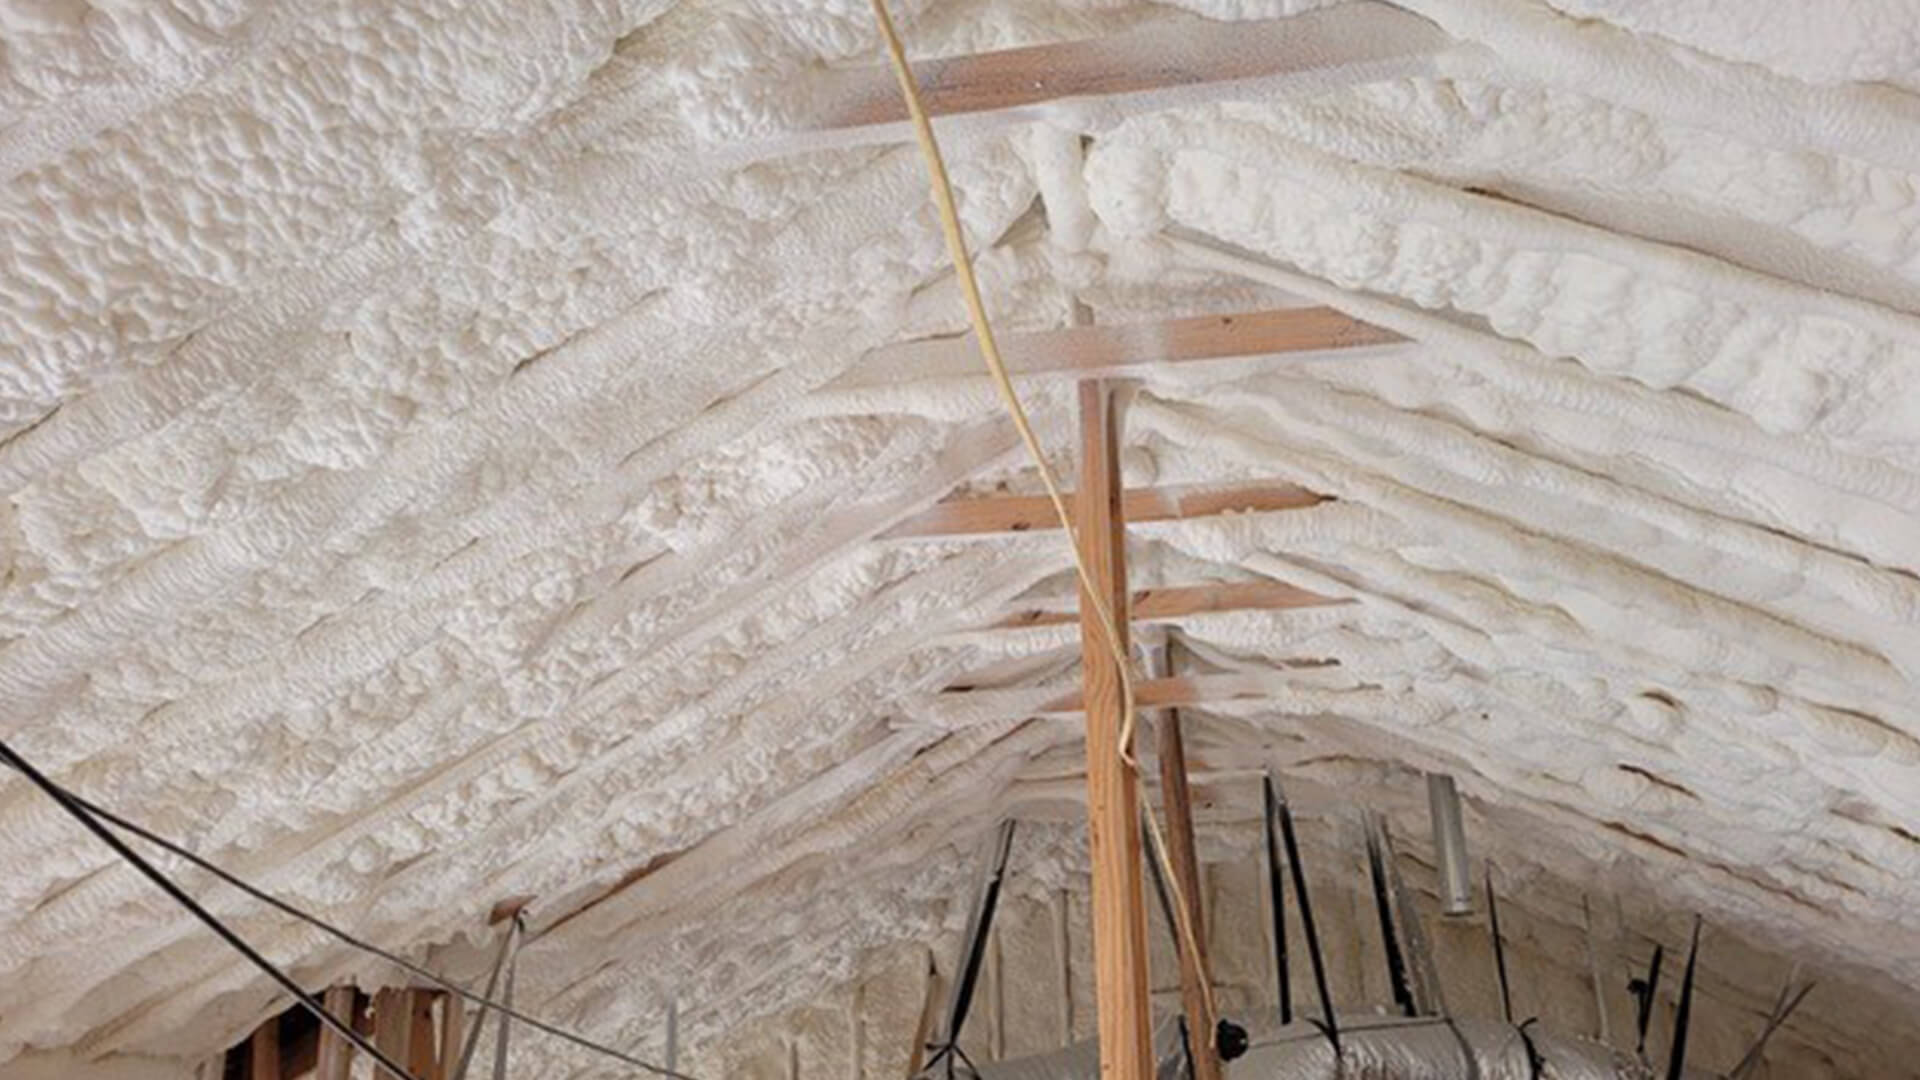 Savannah garage insulation